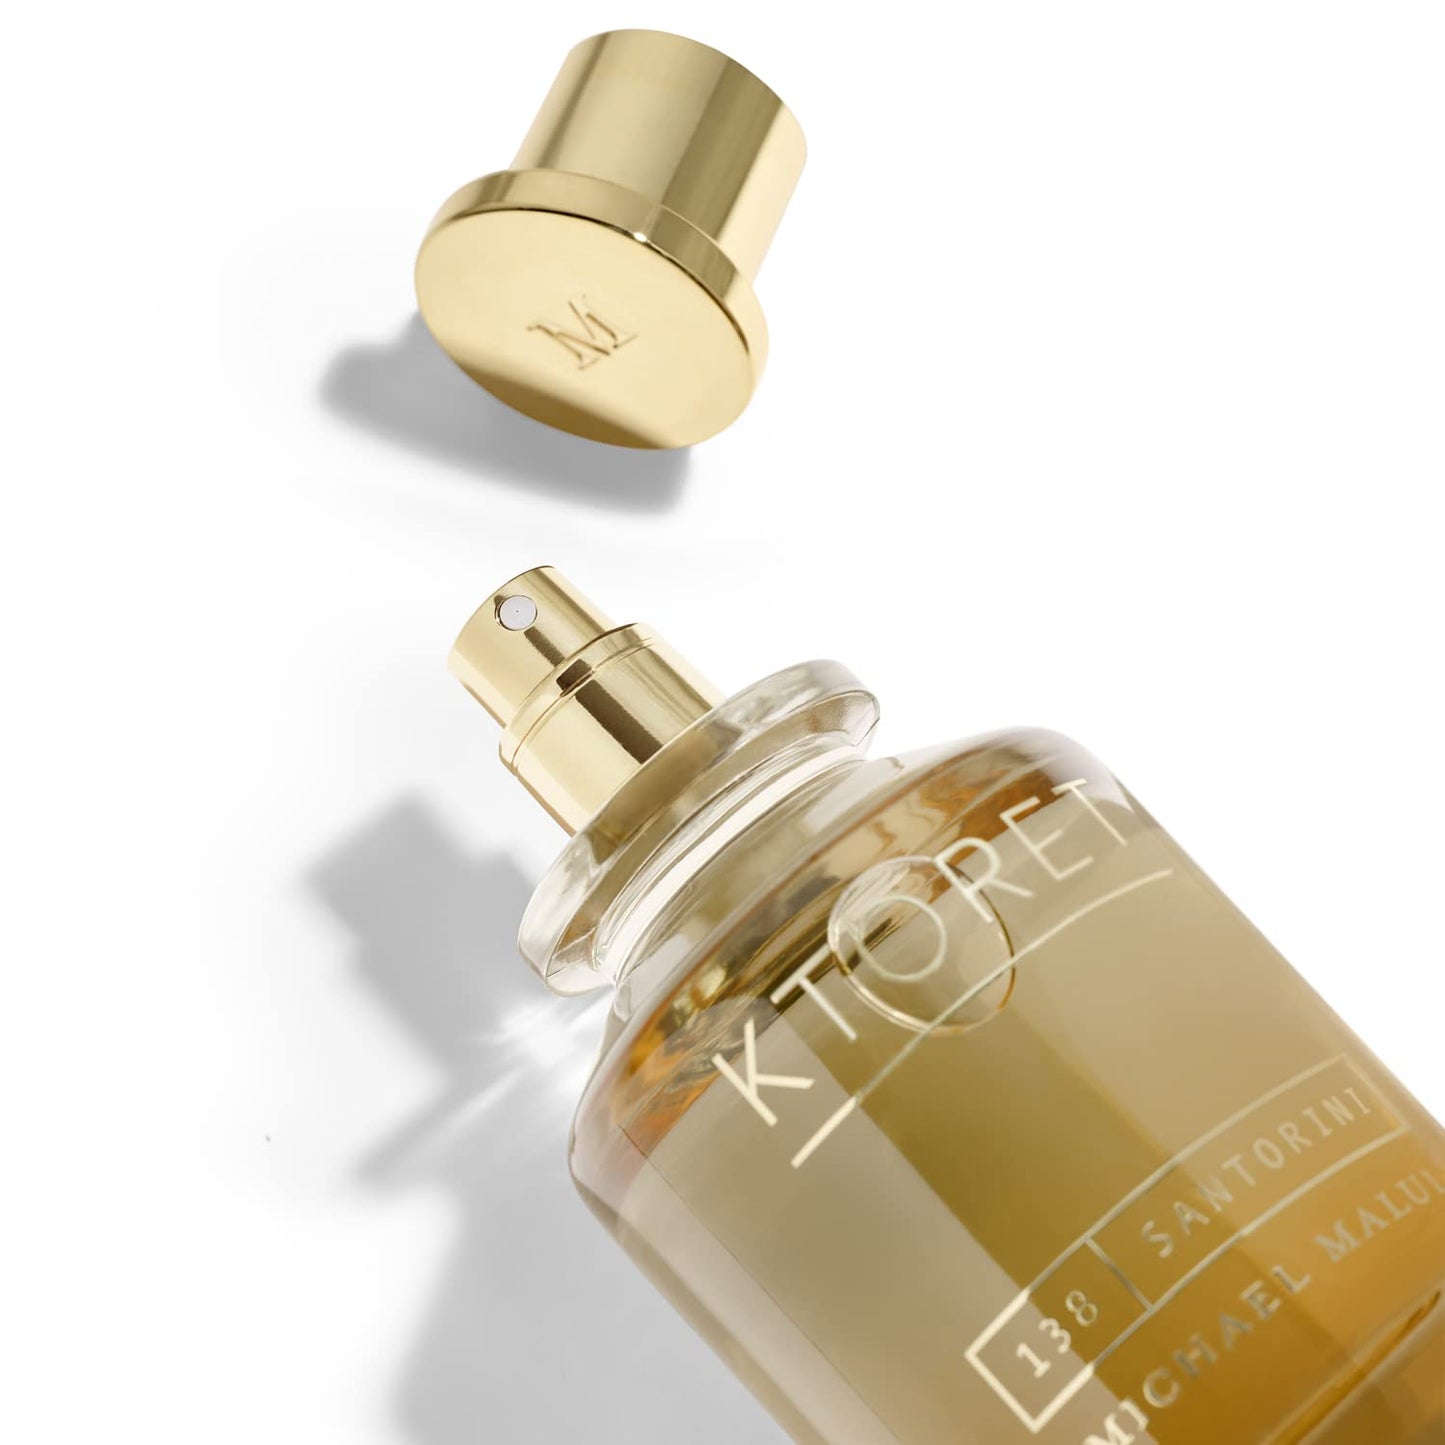 KTORET Santorini, Eau De Parfum, Men'S Fragrance 3.4 Oz, 100 Ml